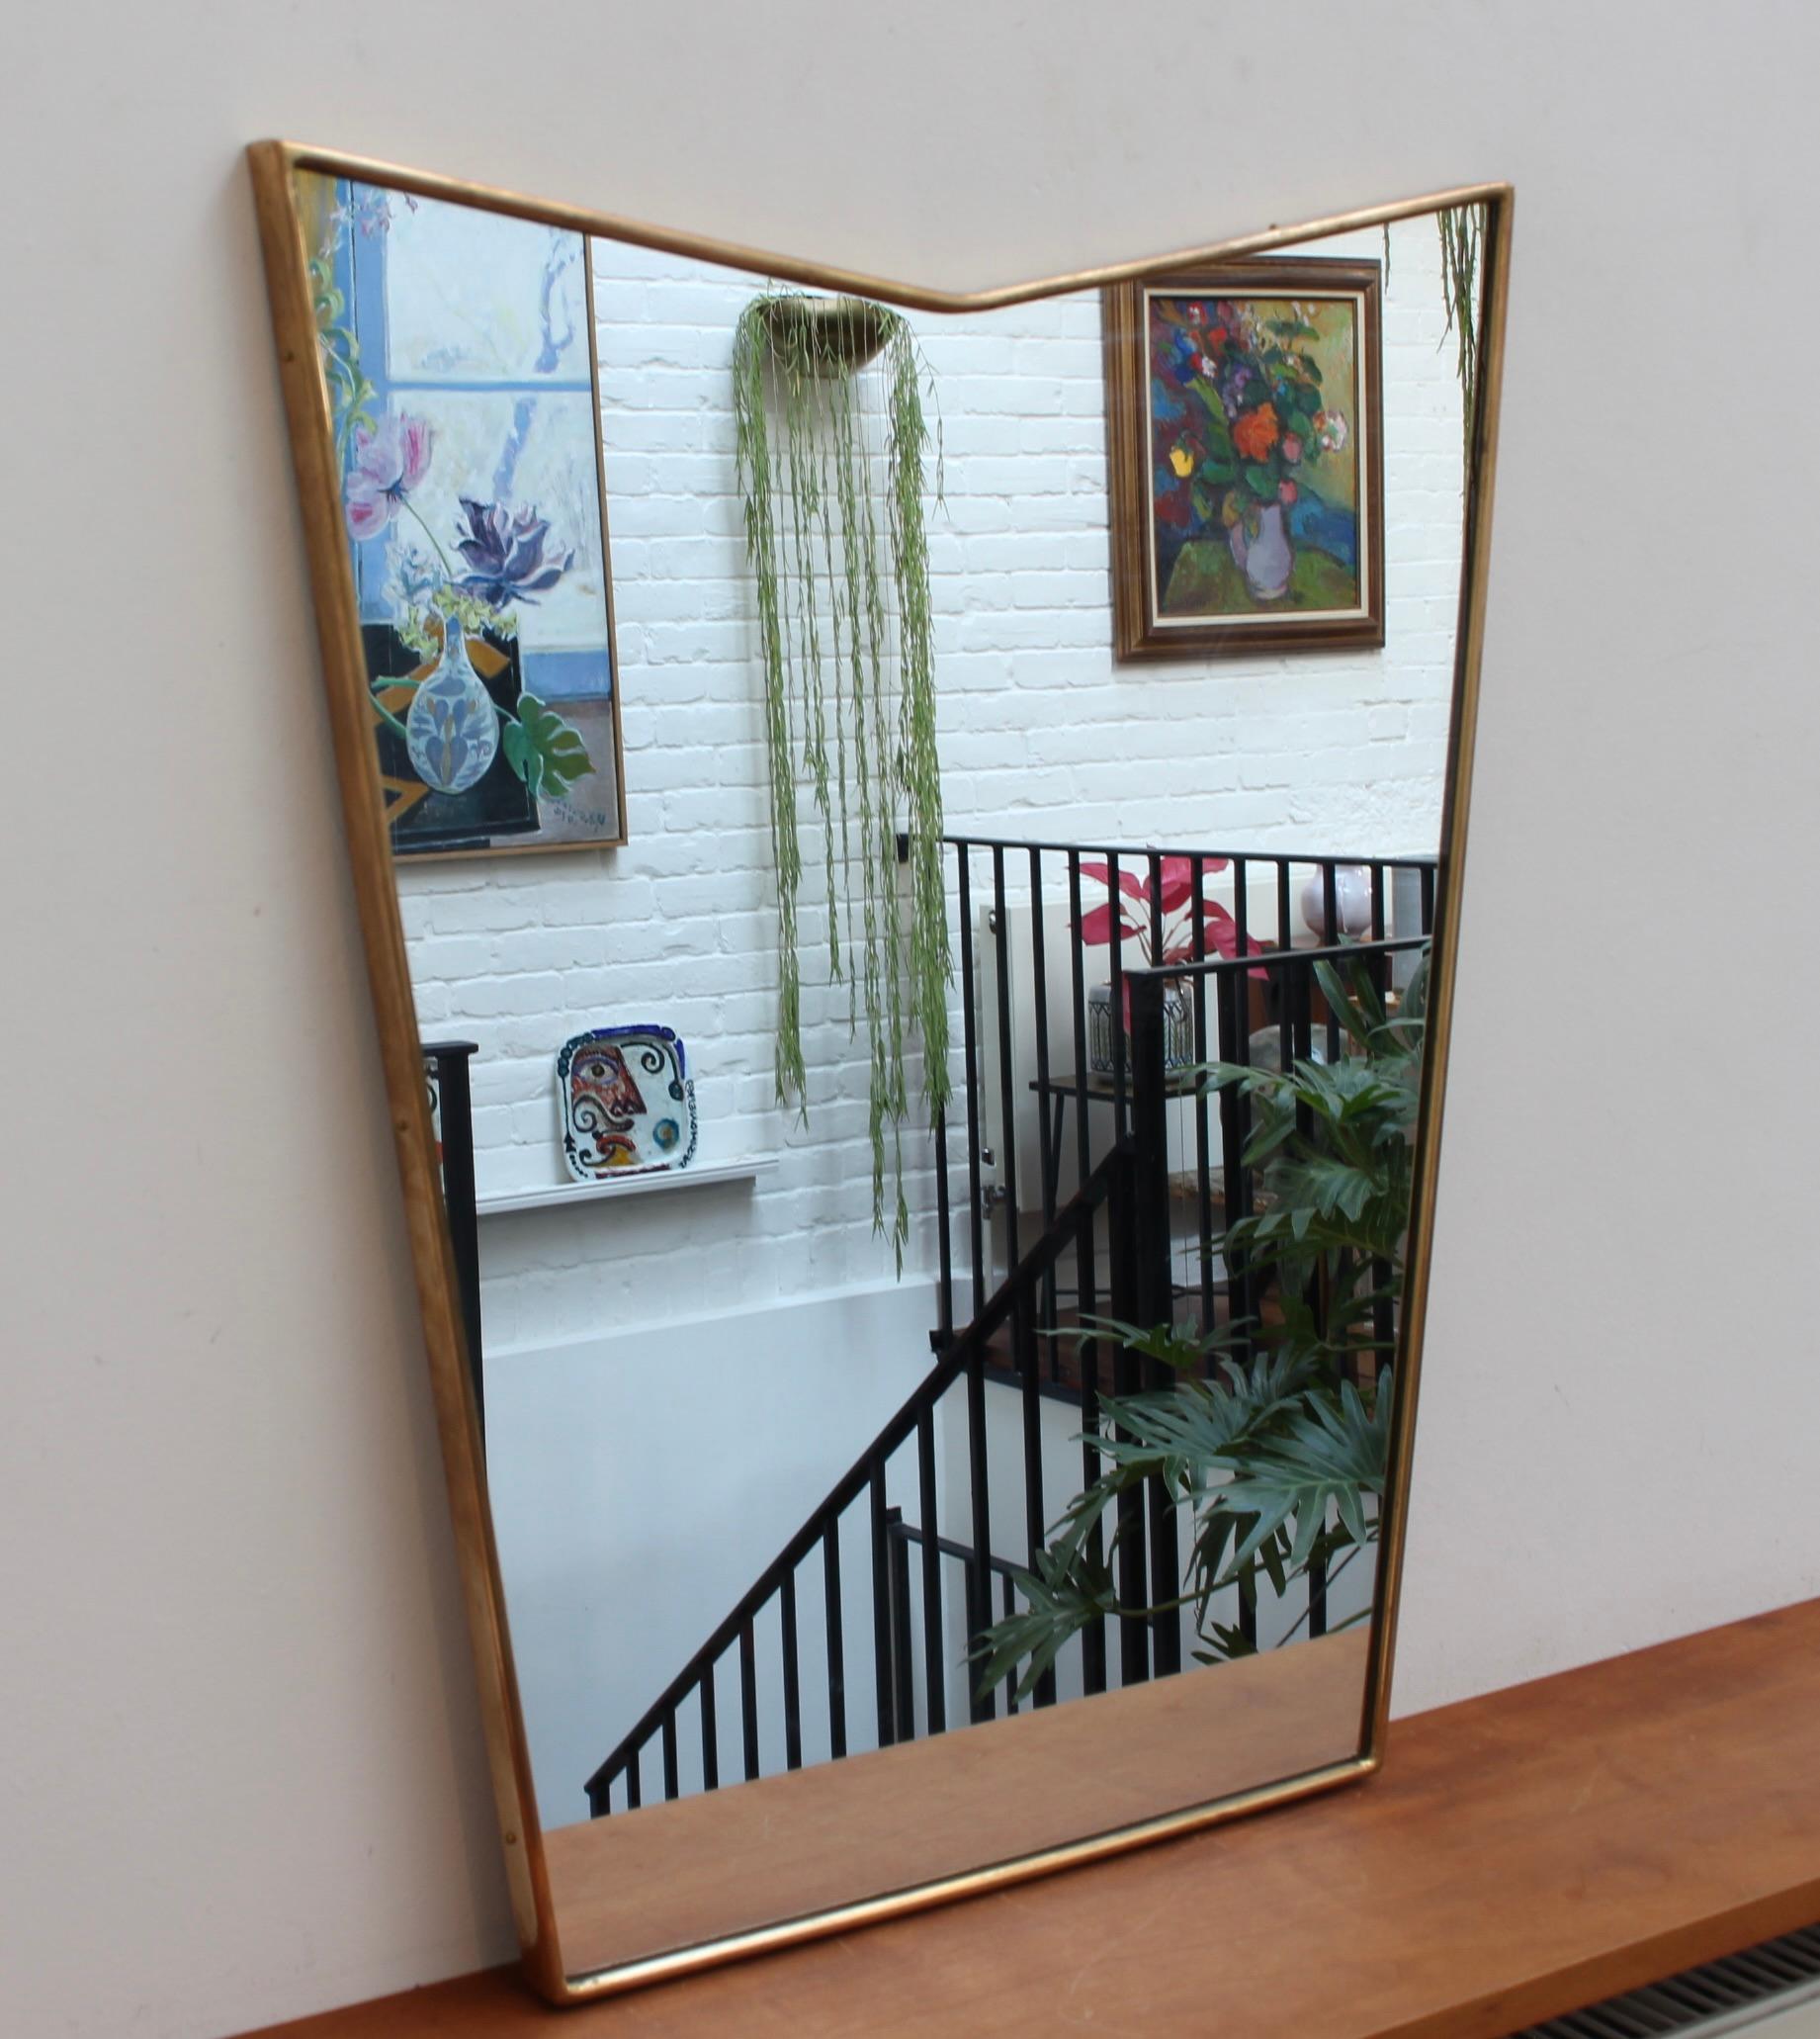 Italienischer Wandspiegel aus der Mitte des Jahrhunderts mit Messingrahmen (ca. 1950). Der elegante, robuste Spiegel hat eine sehr originelle und reizvolle Form. Wie andere Spiegel dieses Stils sind sie stets klassisch elegant und unverwechselbar.